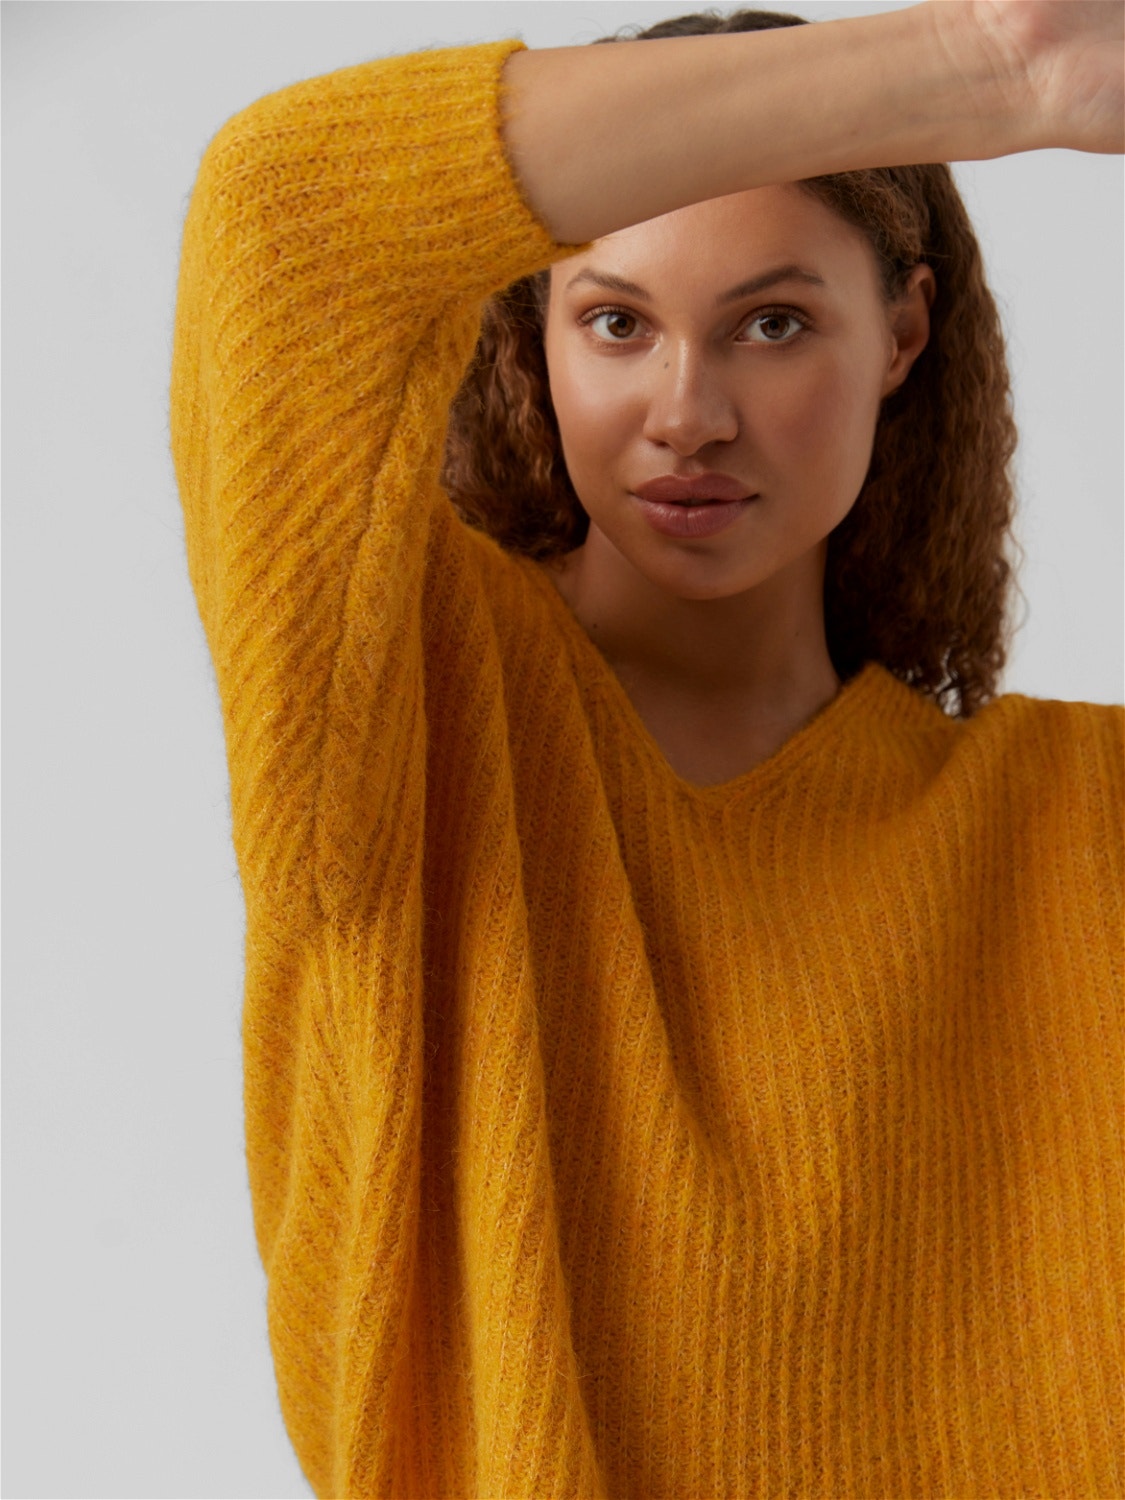 Vero Moda VMJULIE Sweter -Golden Yellow - 10256338